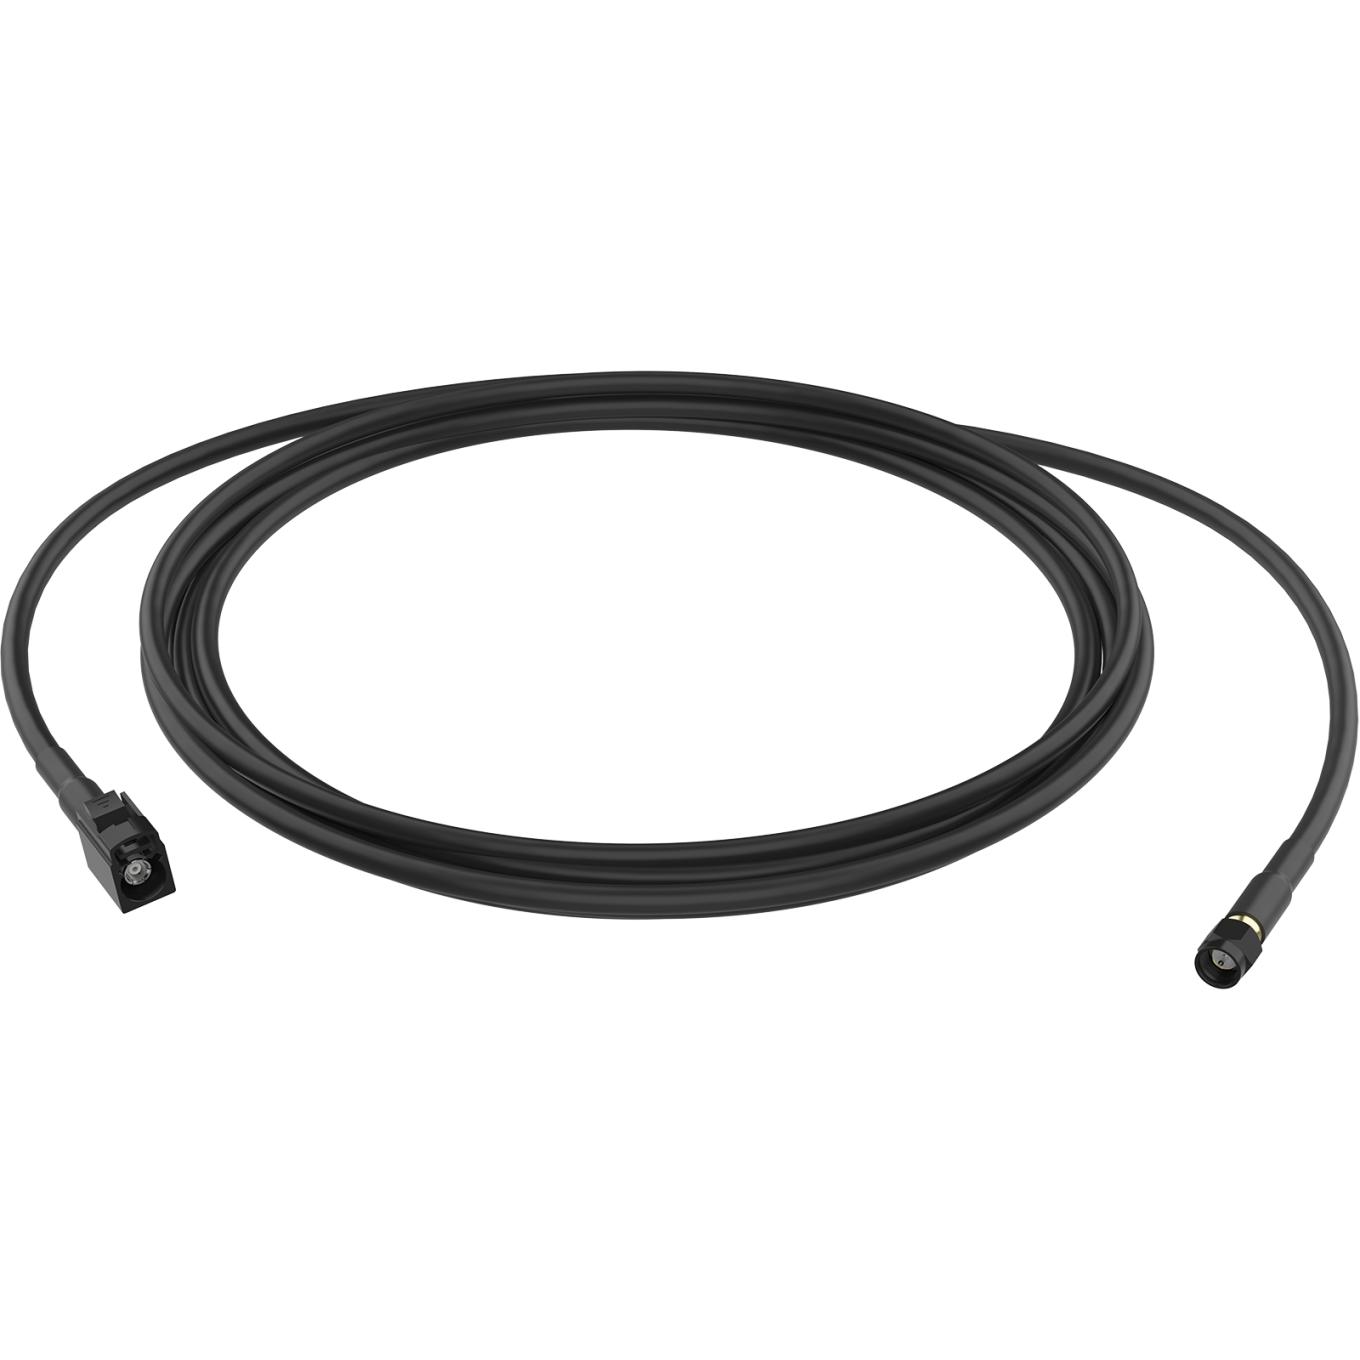 AXIS TU6005 Plenum Cable, 1m